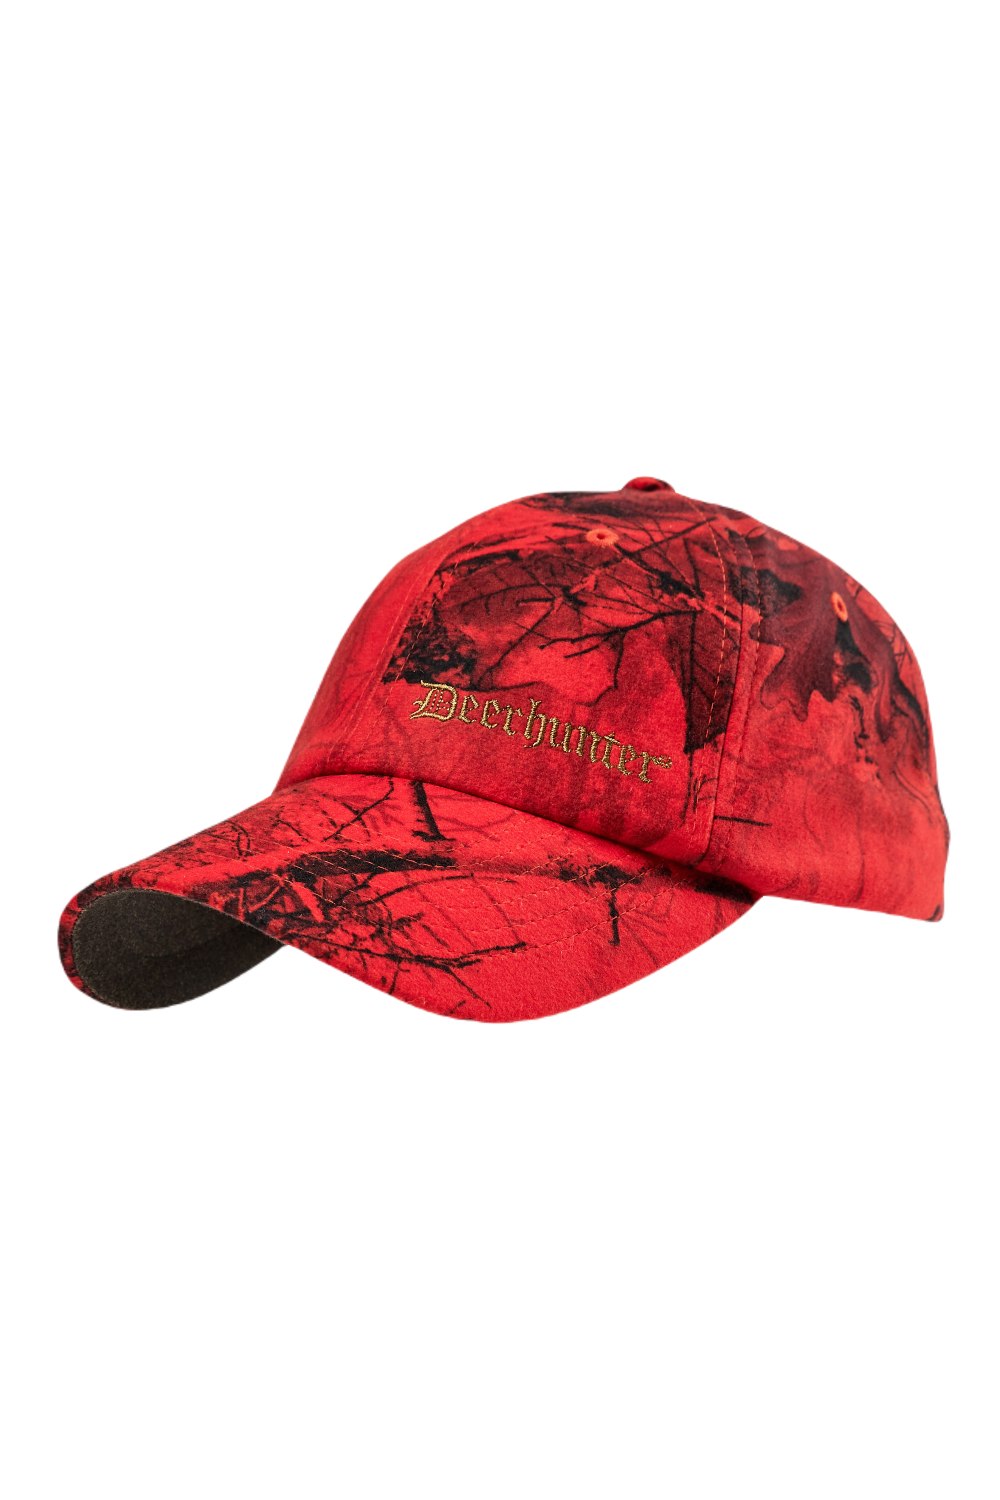 Deerhunter Ram Cap in RealTree Edge Red 